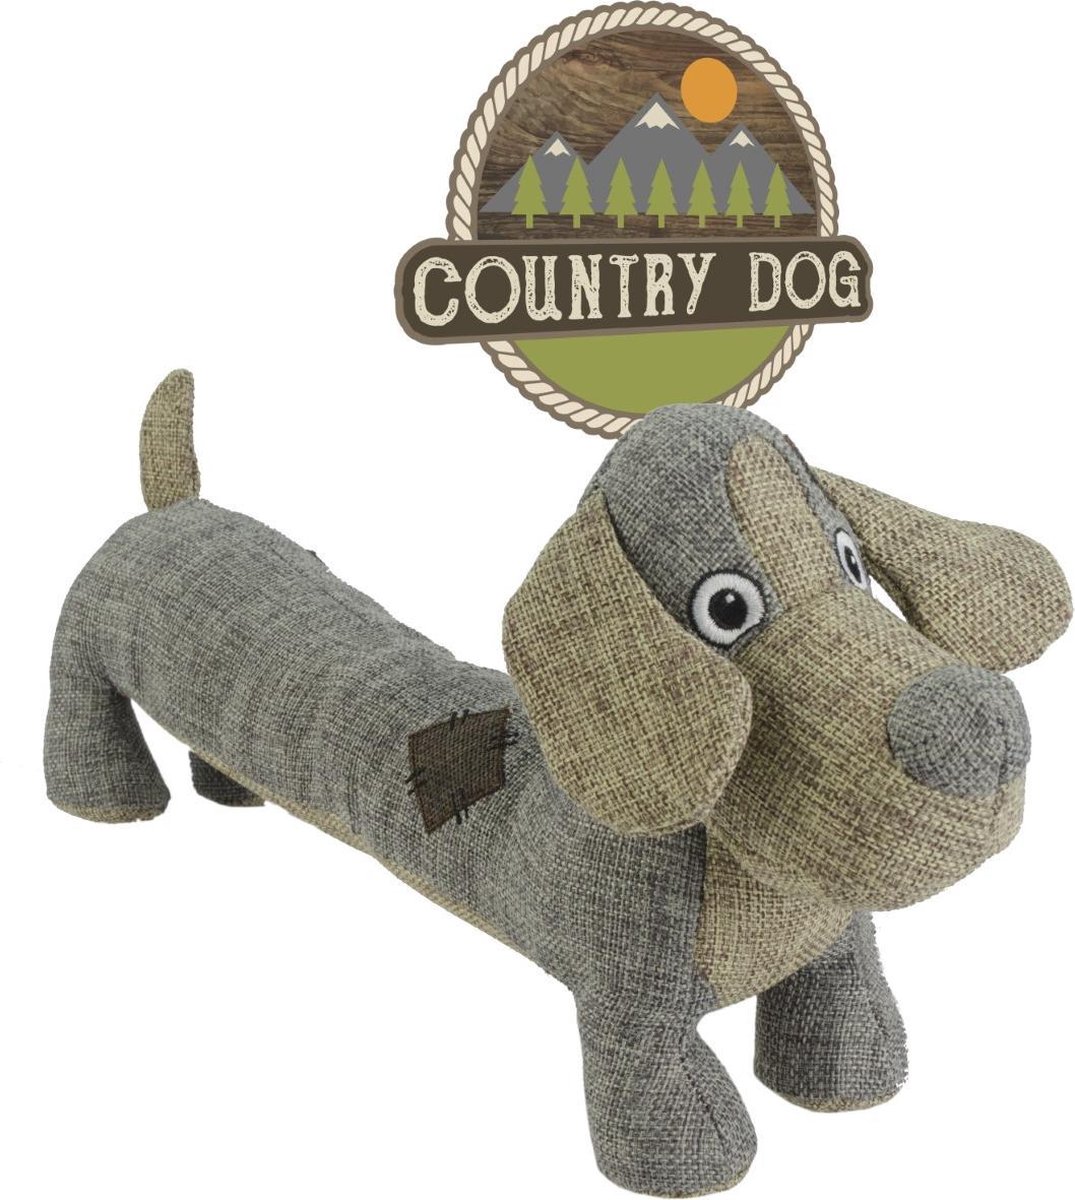 Country Dog Lucky - Honden speelgoed - Honden speeltje met piepgeluid - Honden knuffel gemaakt van duurzame materialen - Dubbel gestikt - Extra lagen - Met krakende vulling - Voor trek spelletjes of apporteren - Grijs/Bruin - 35x18cm